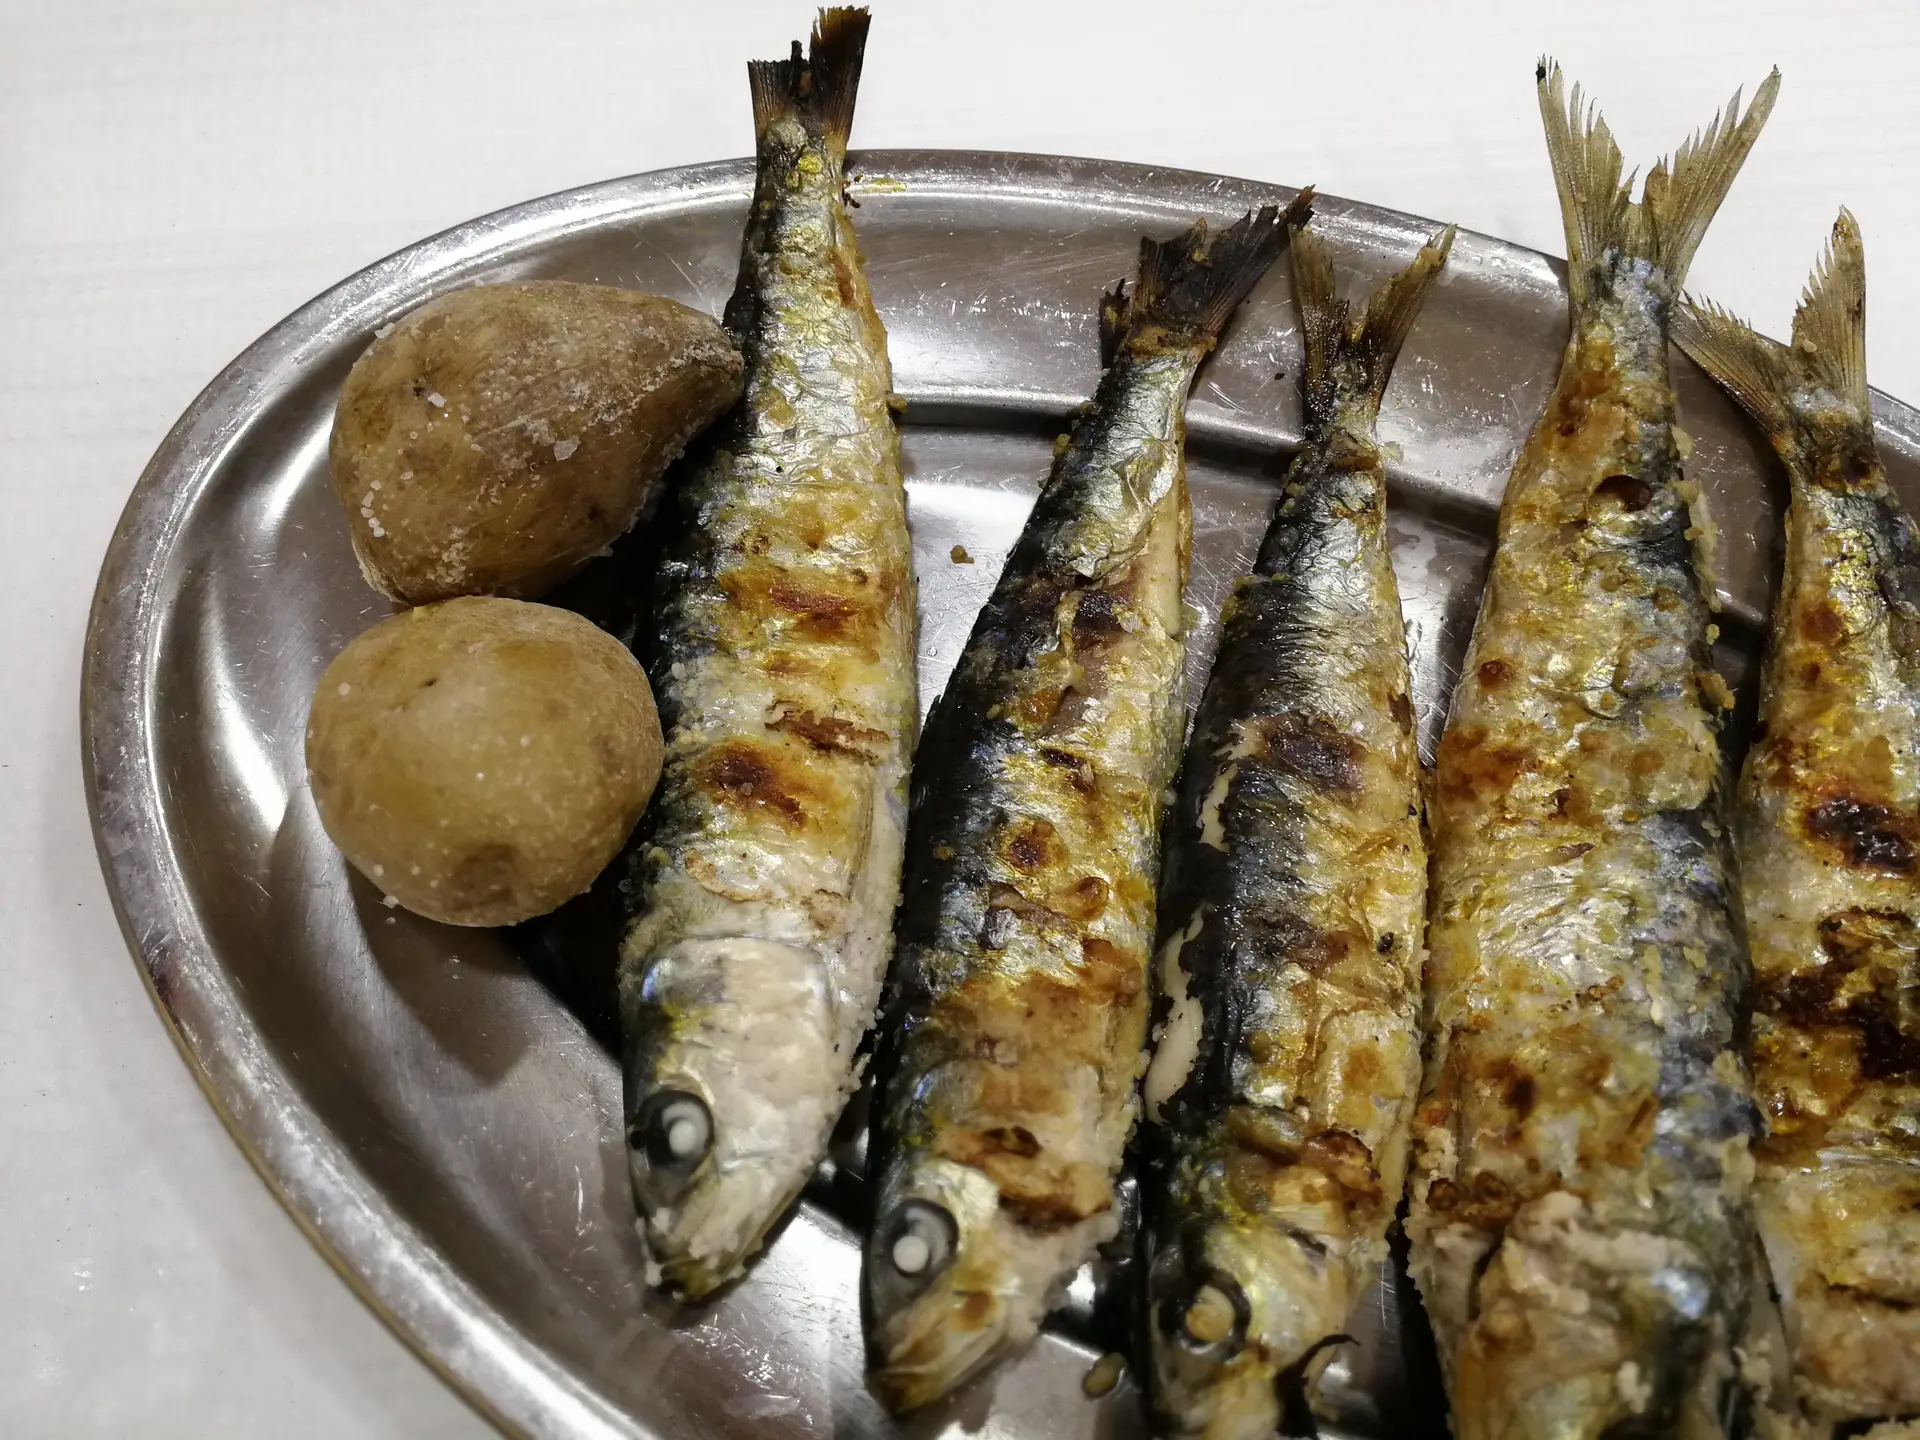 De Carnide à Madragoa, nestes restaurantes serve-se a melhor sardinha assada de Lisboa